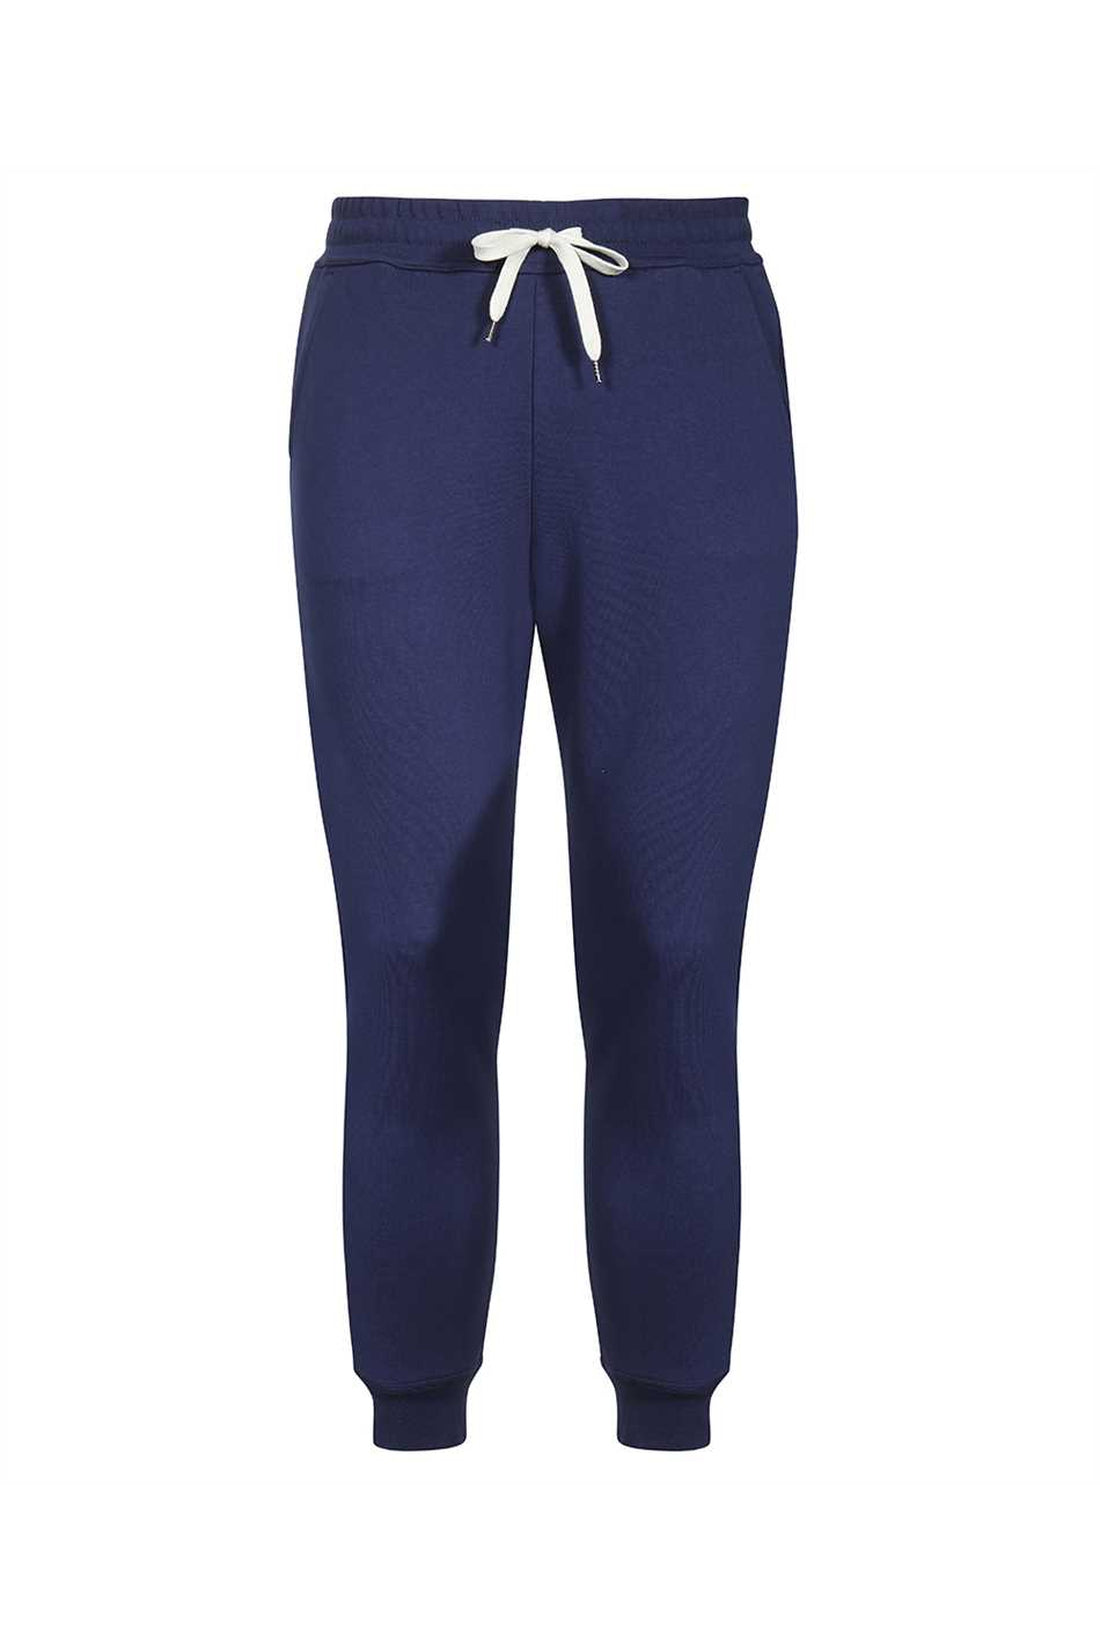 Vivienne Westwood-OUTLET-SALE-Jersey sweatpants-ARCHIVIST